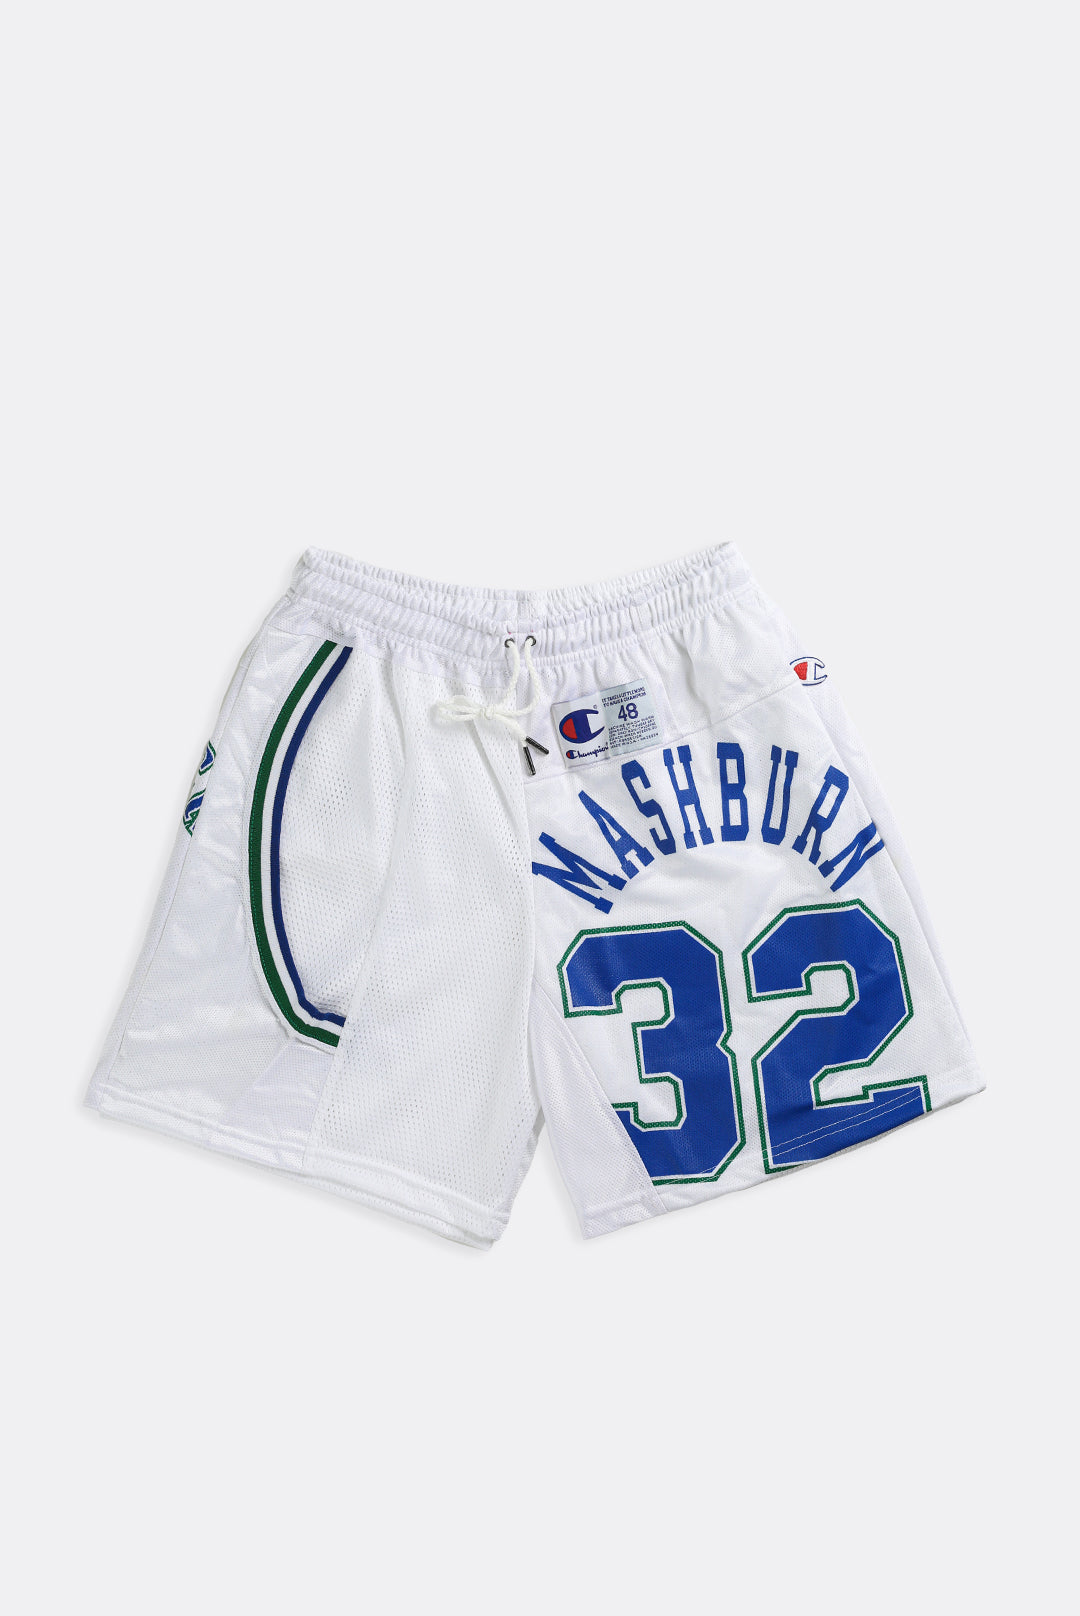 nba shorts Los Angeles Lakers - Shorts - Clothing - Men